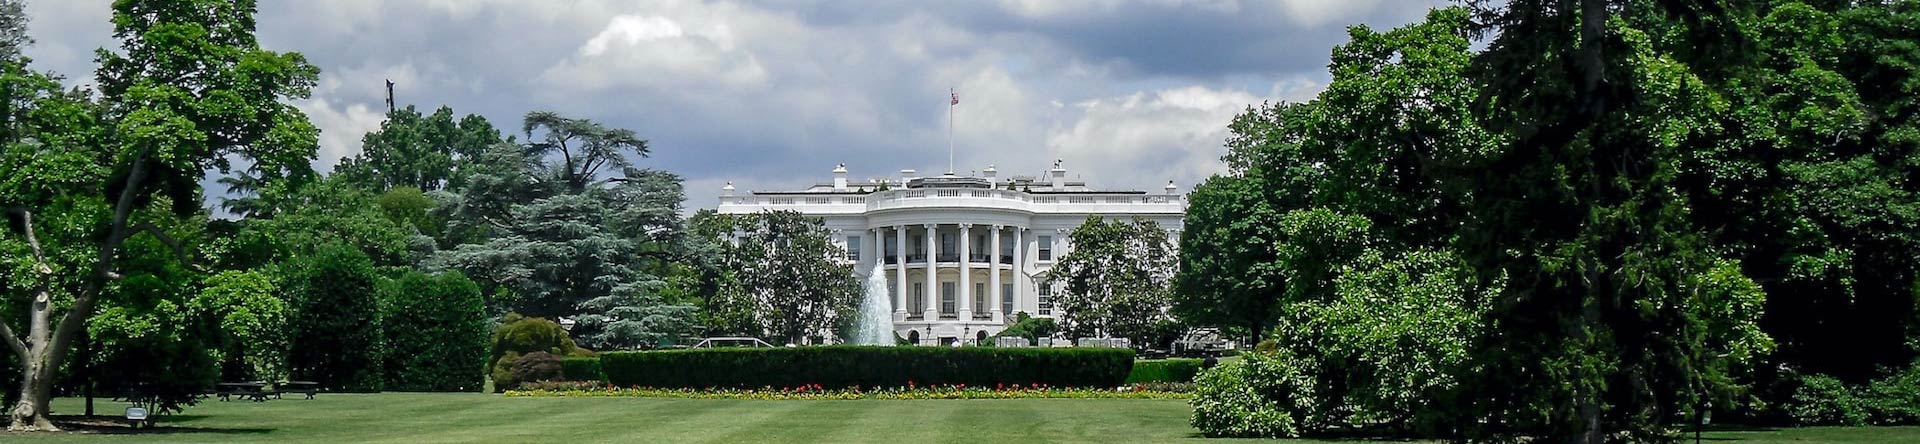 A Casa Branca Washington D.C.